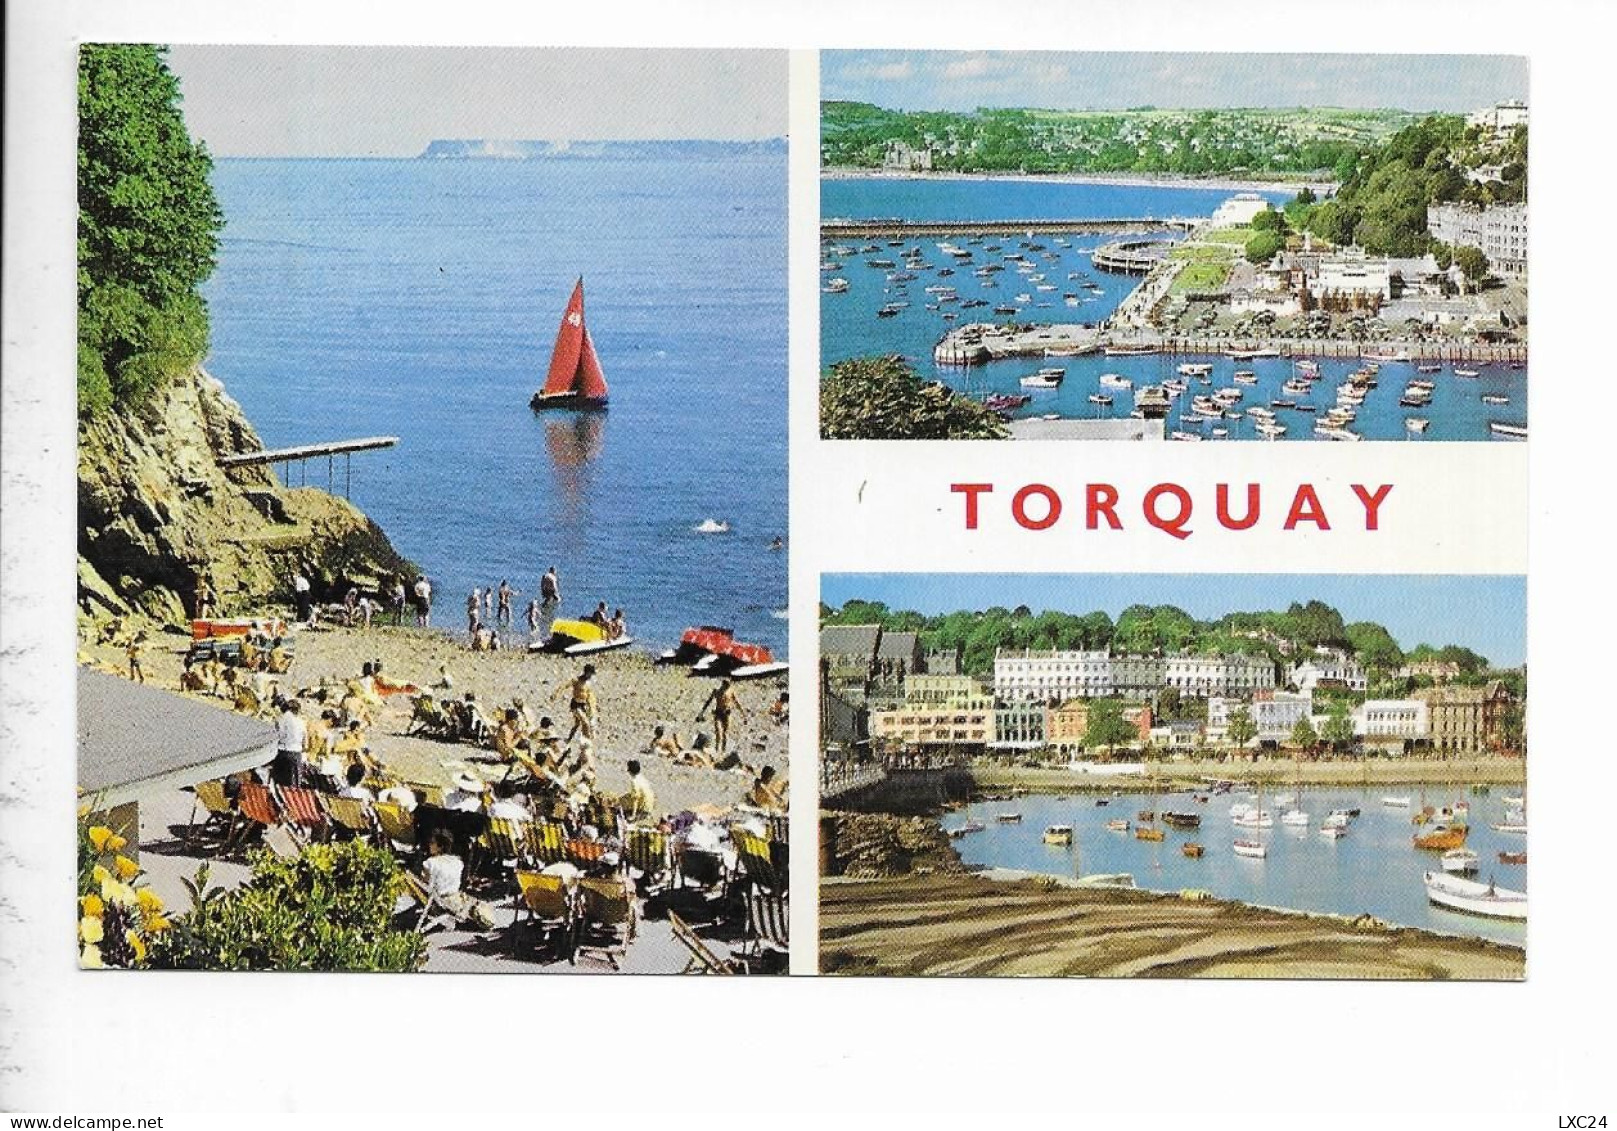 TORQUAY. - Torquay